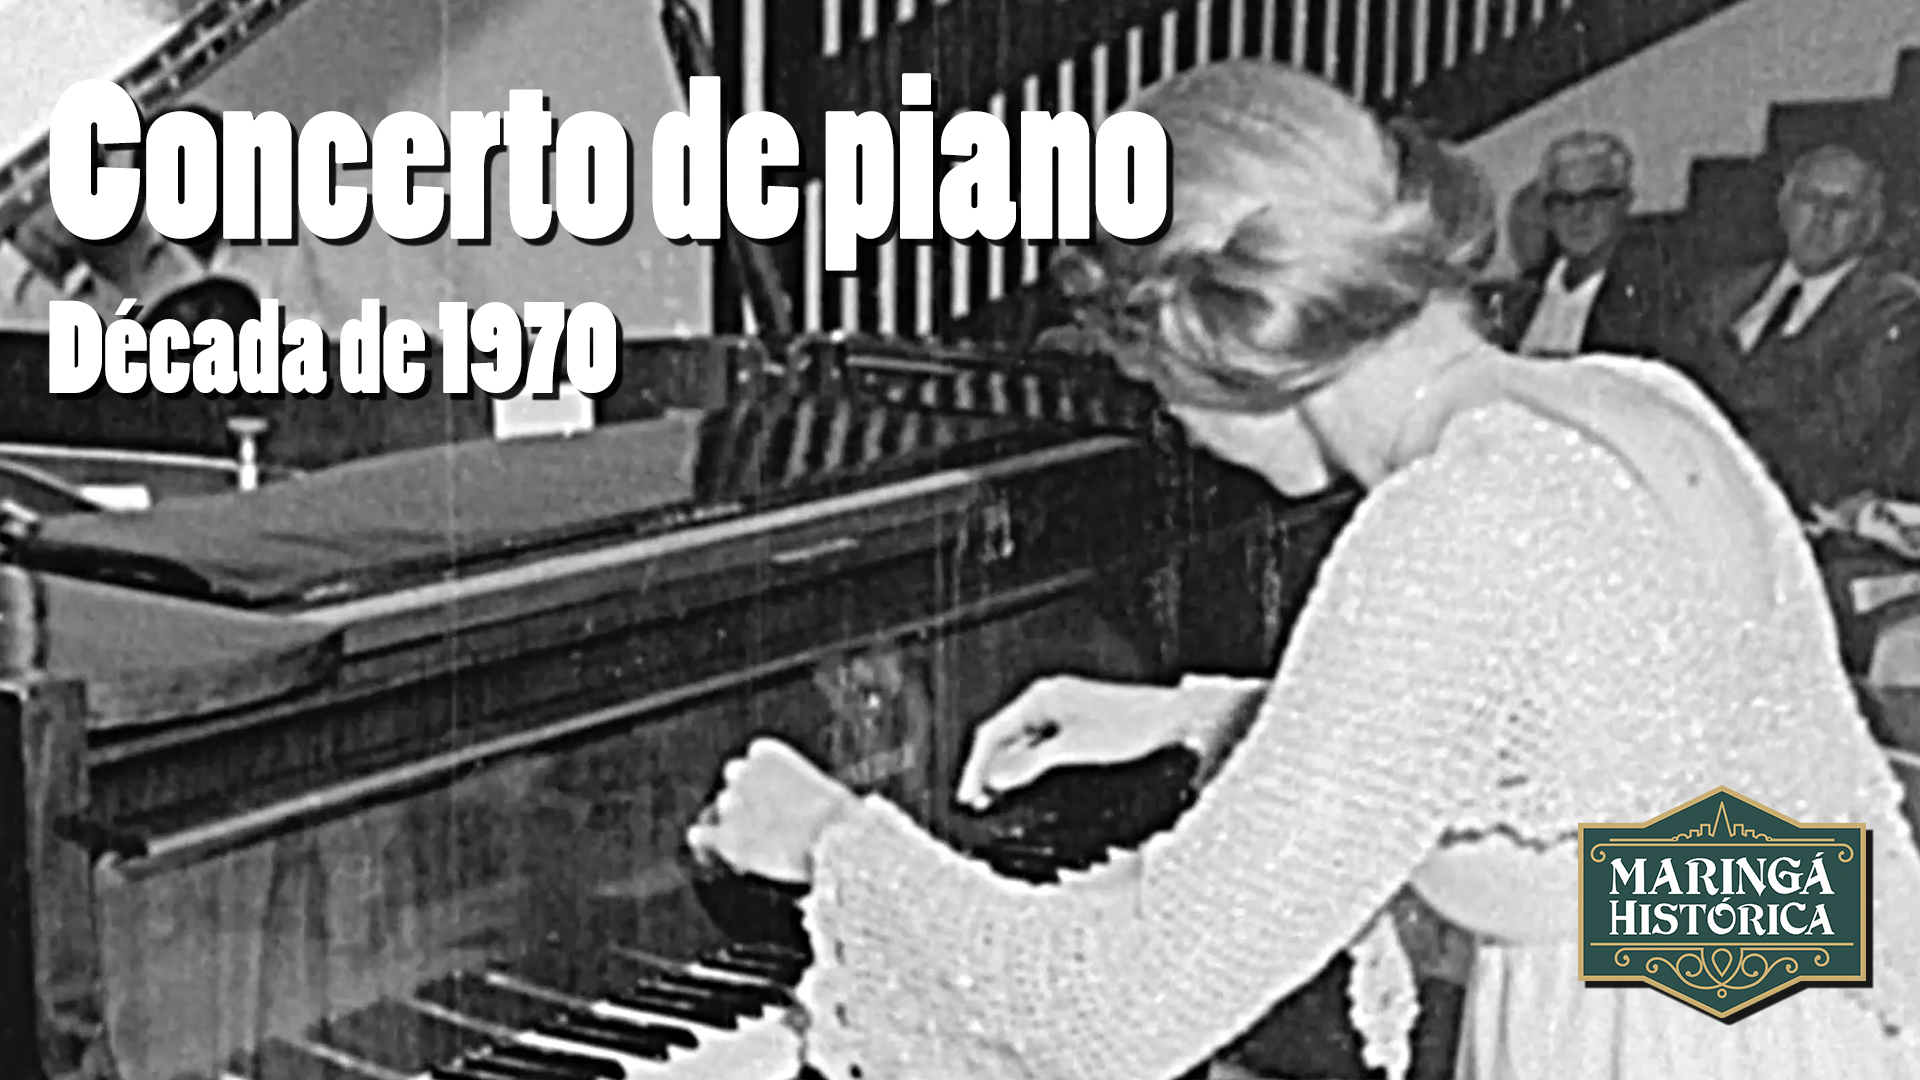 RARIDADE - Concerto de piano - Década de 1970